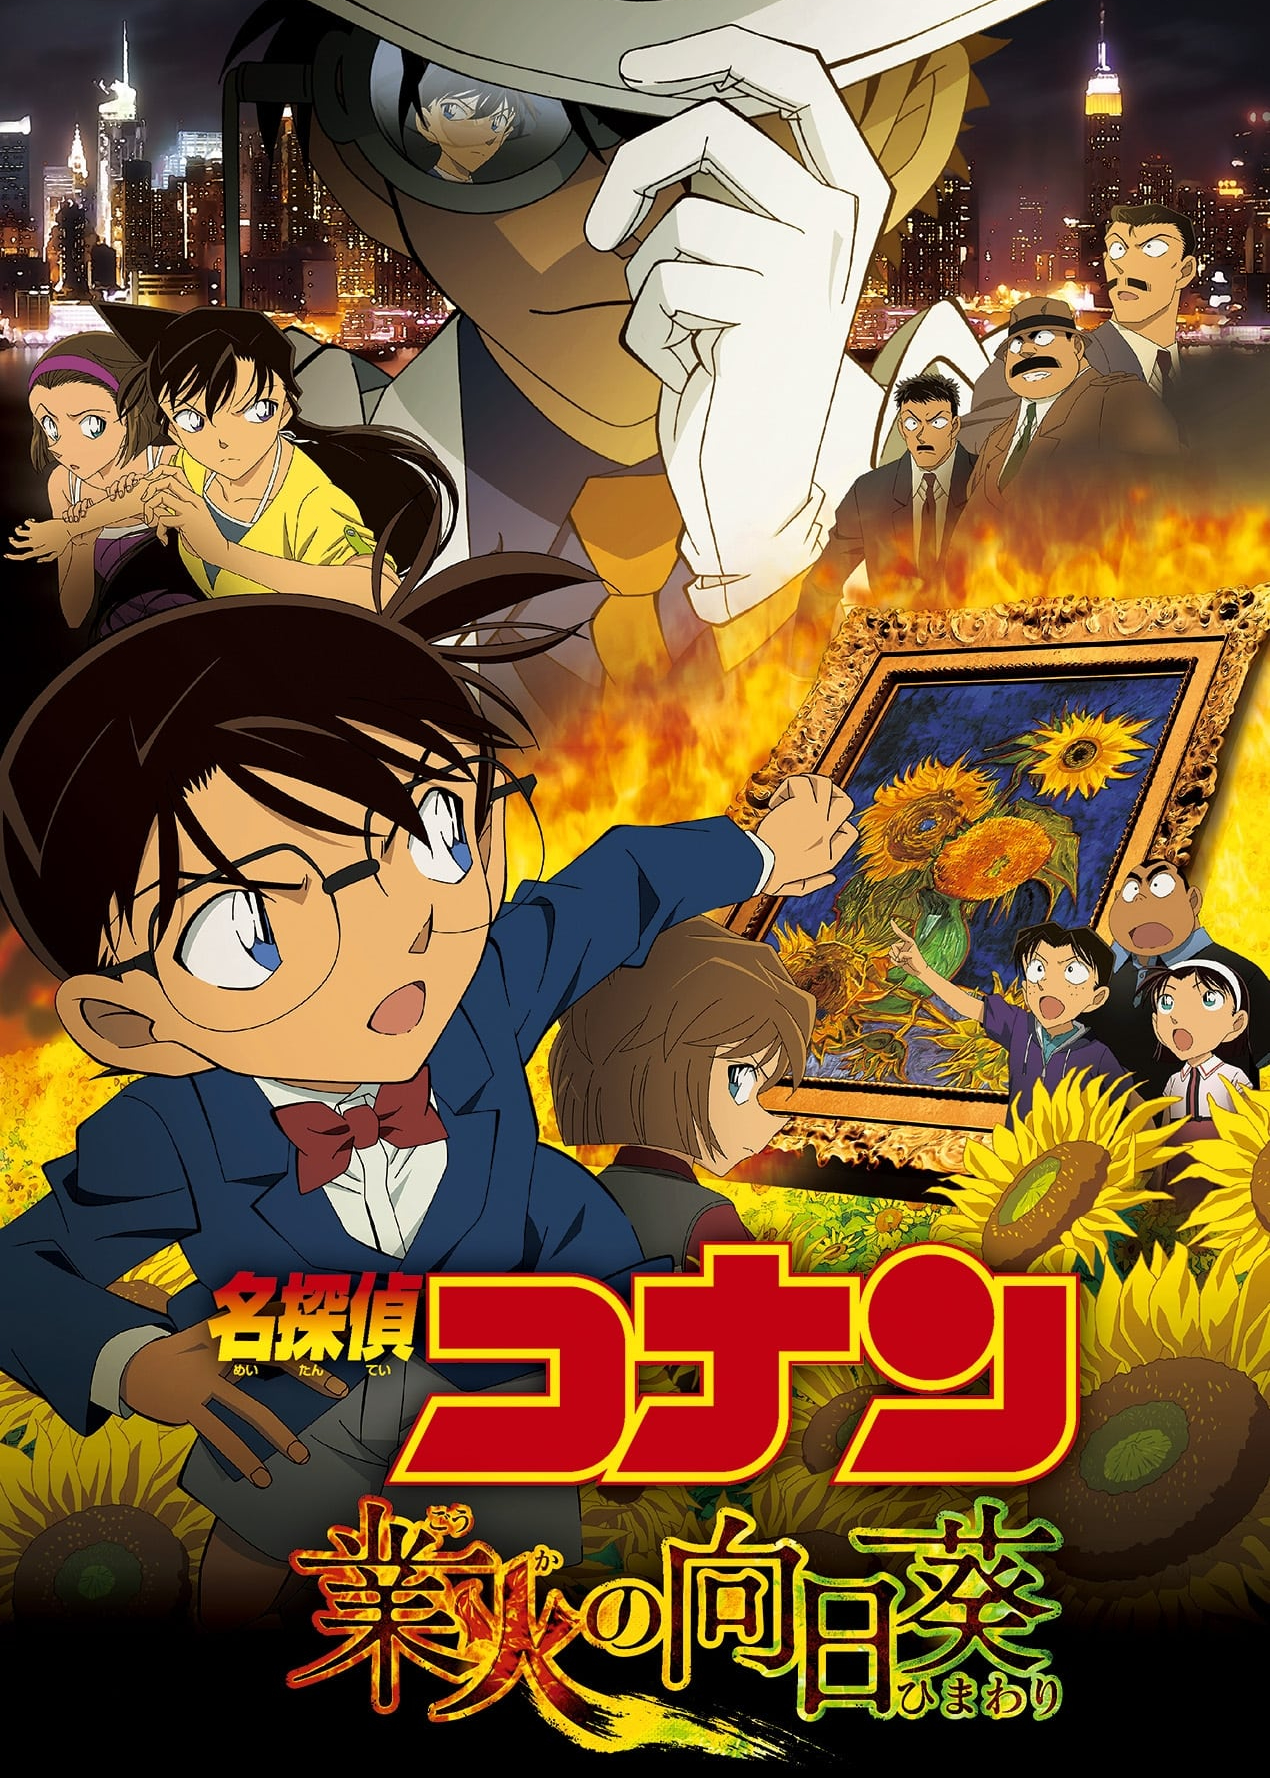 Poster Phim Thám Tử Lừng Danh Conan: Hoa Hướng Dương Rực Lửa (Detective Conan: Sunflowers of Inferno)